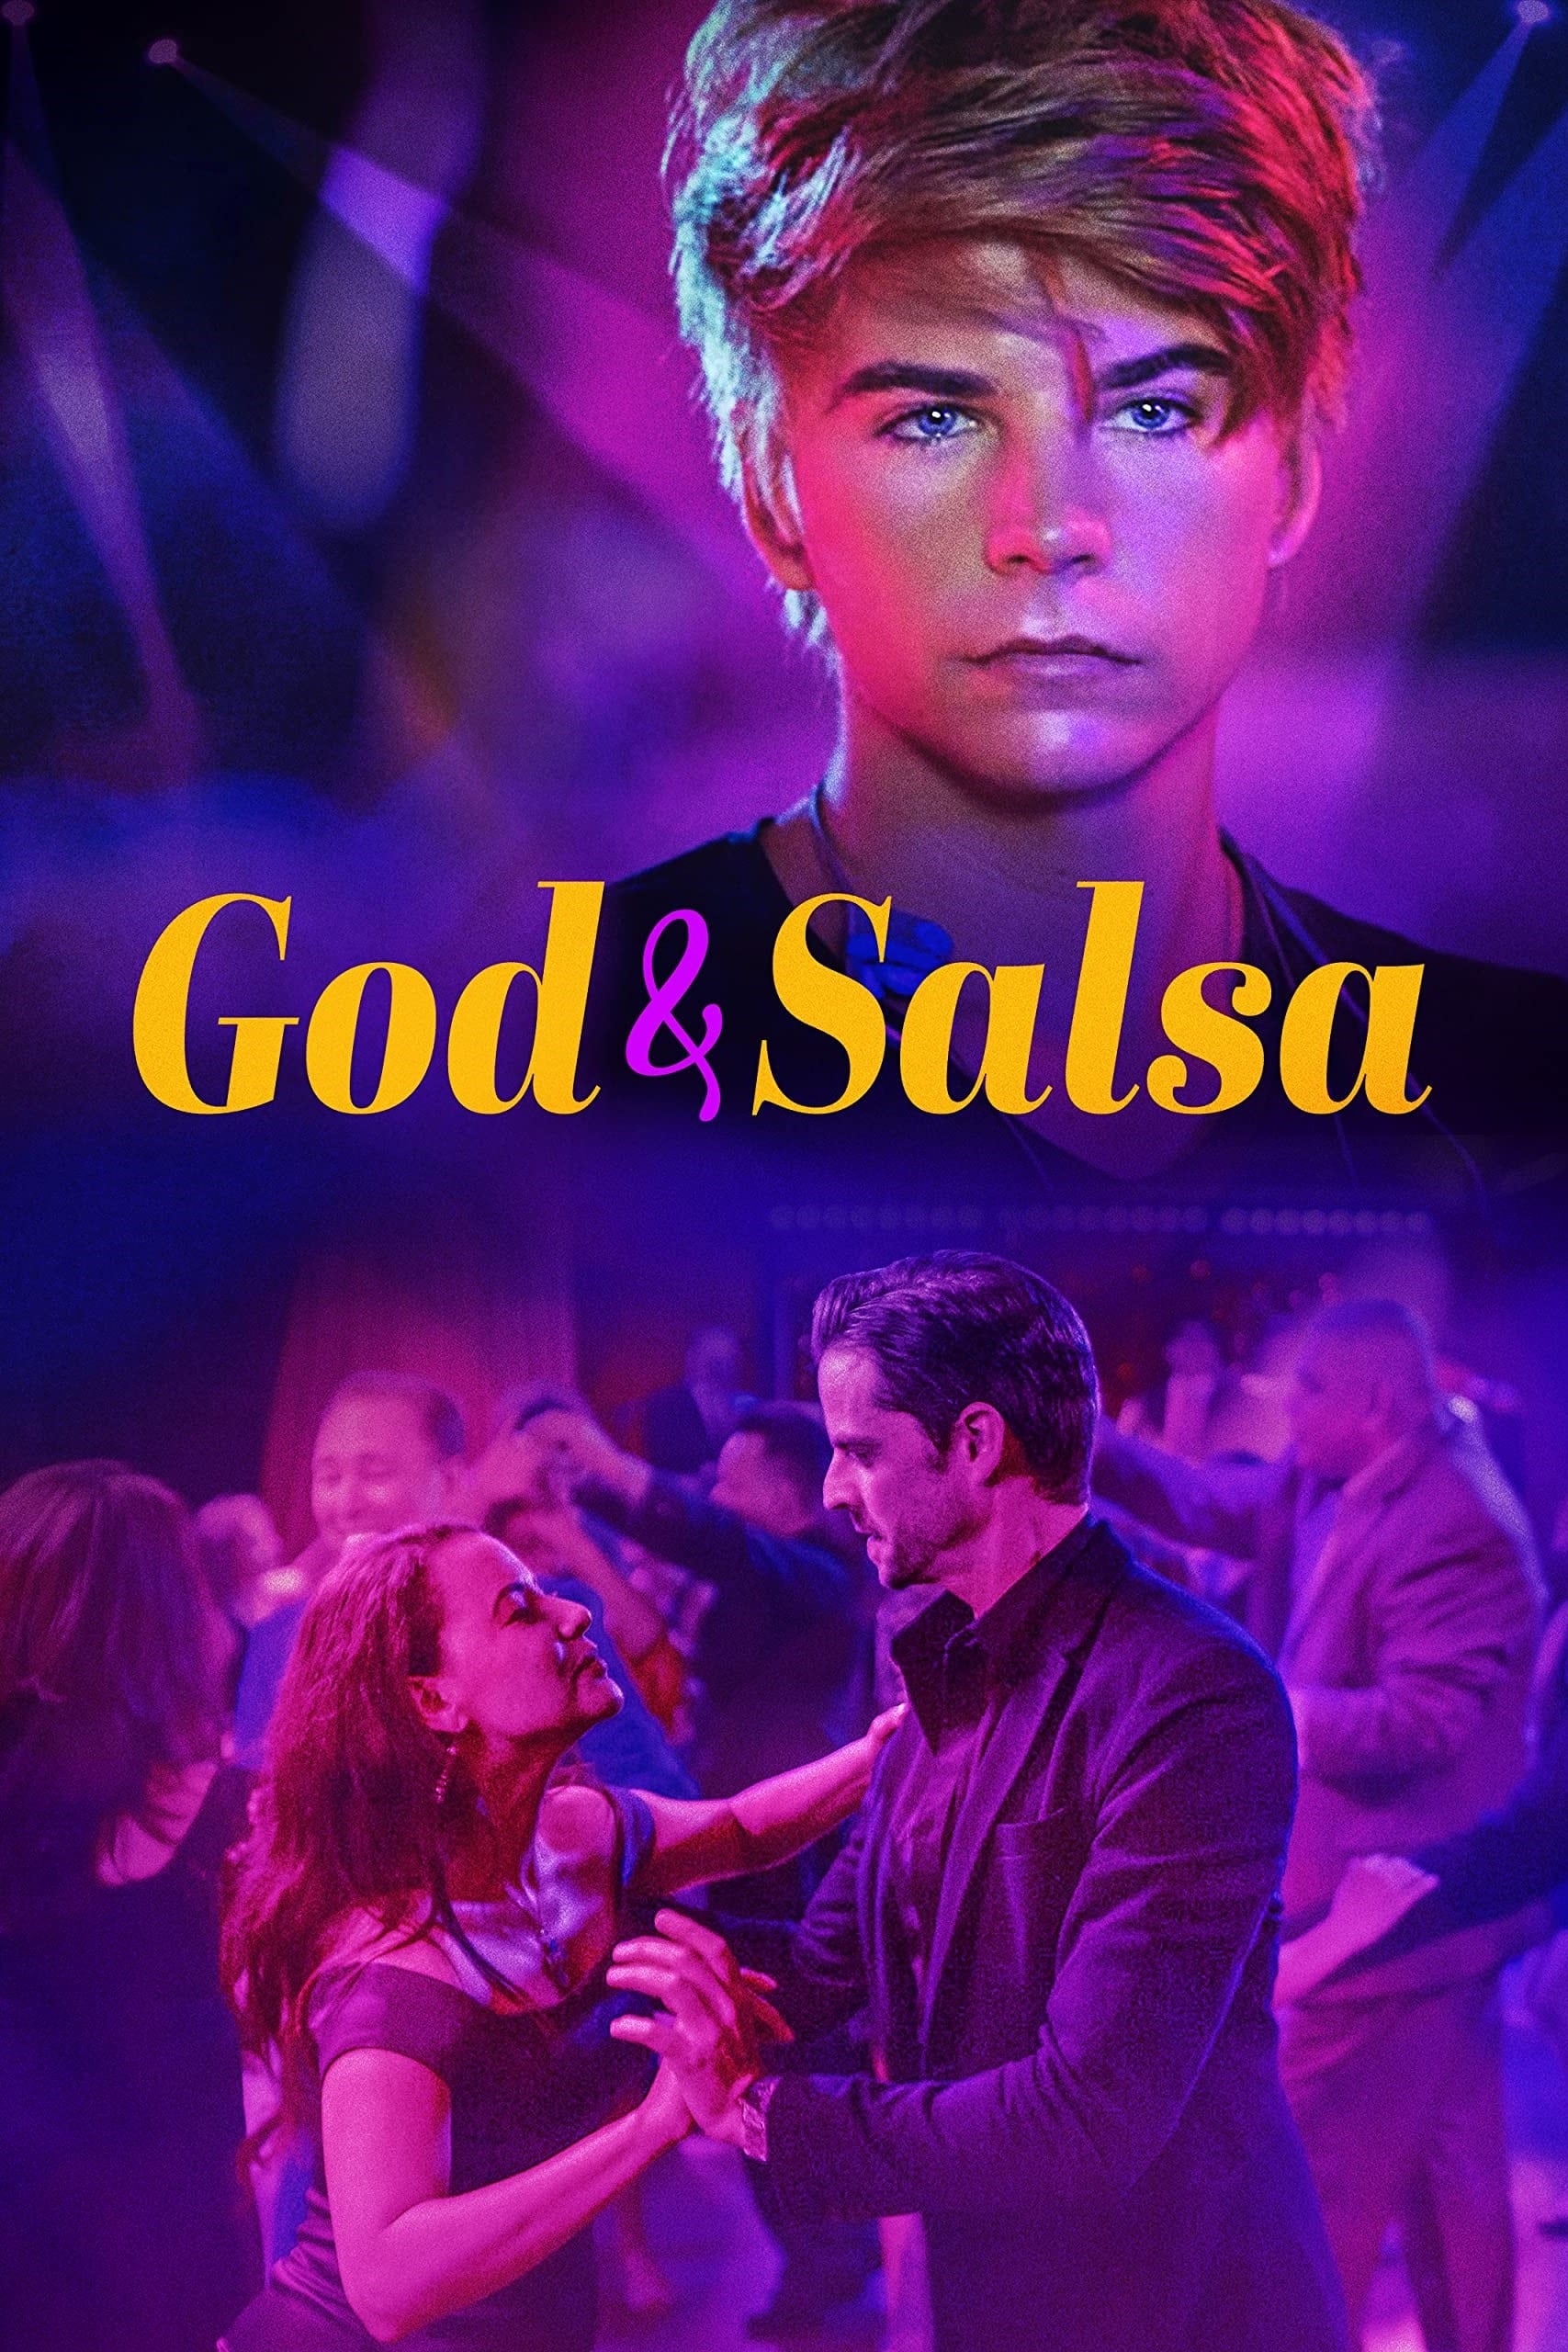 God & Salsa